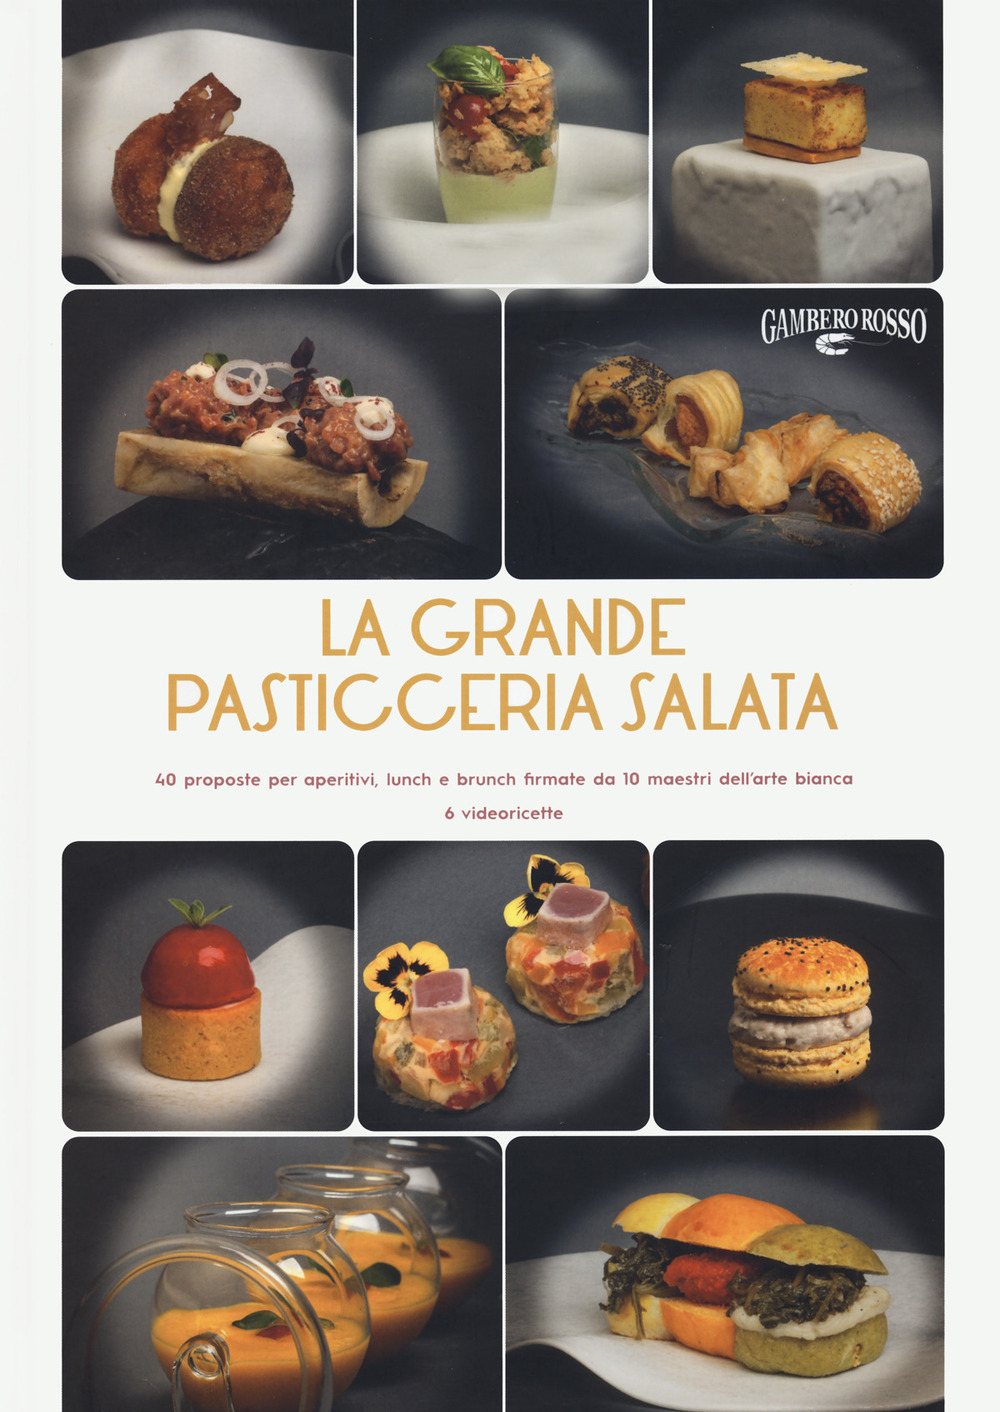 Image of La grande pasticceria salata. 40 proposte per aperitivi, lunch e brunch firmate da 10 maestri dell'arte bianca